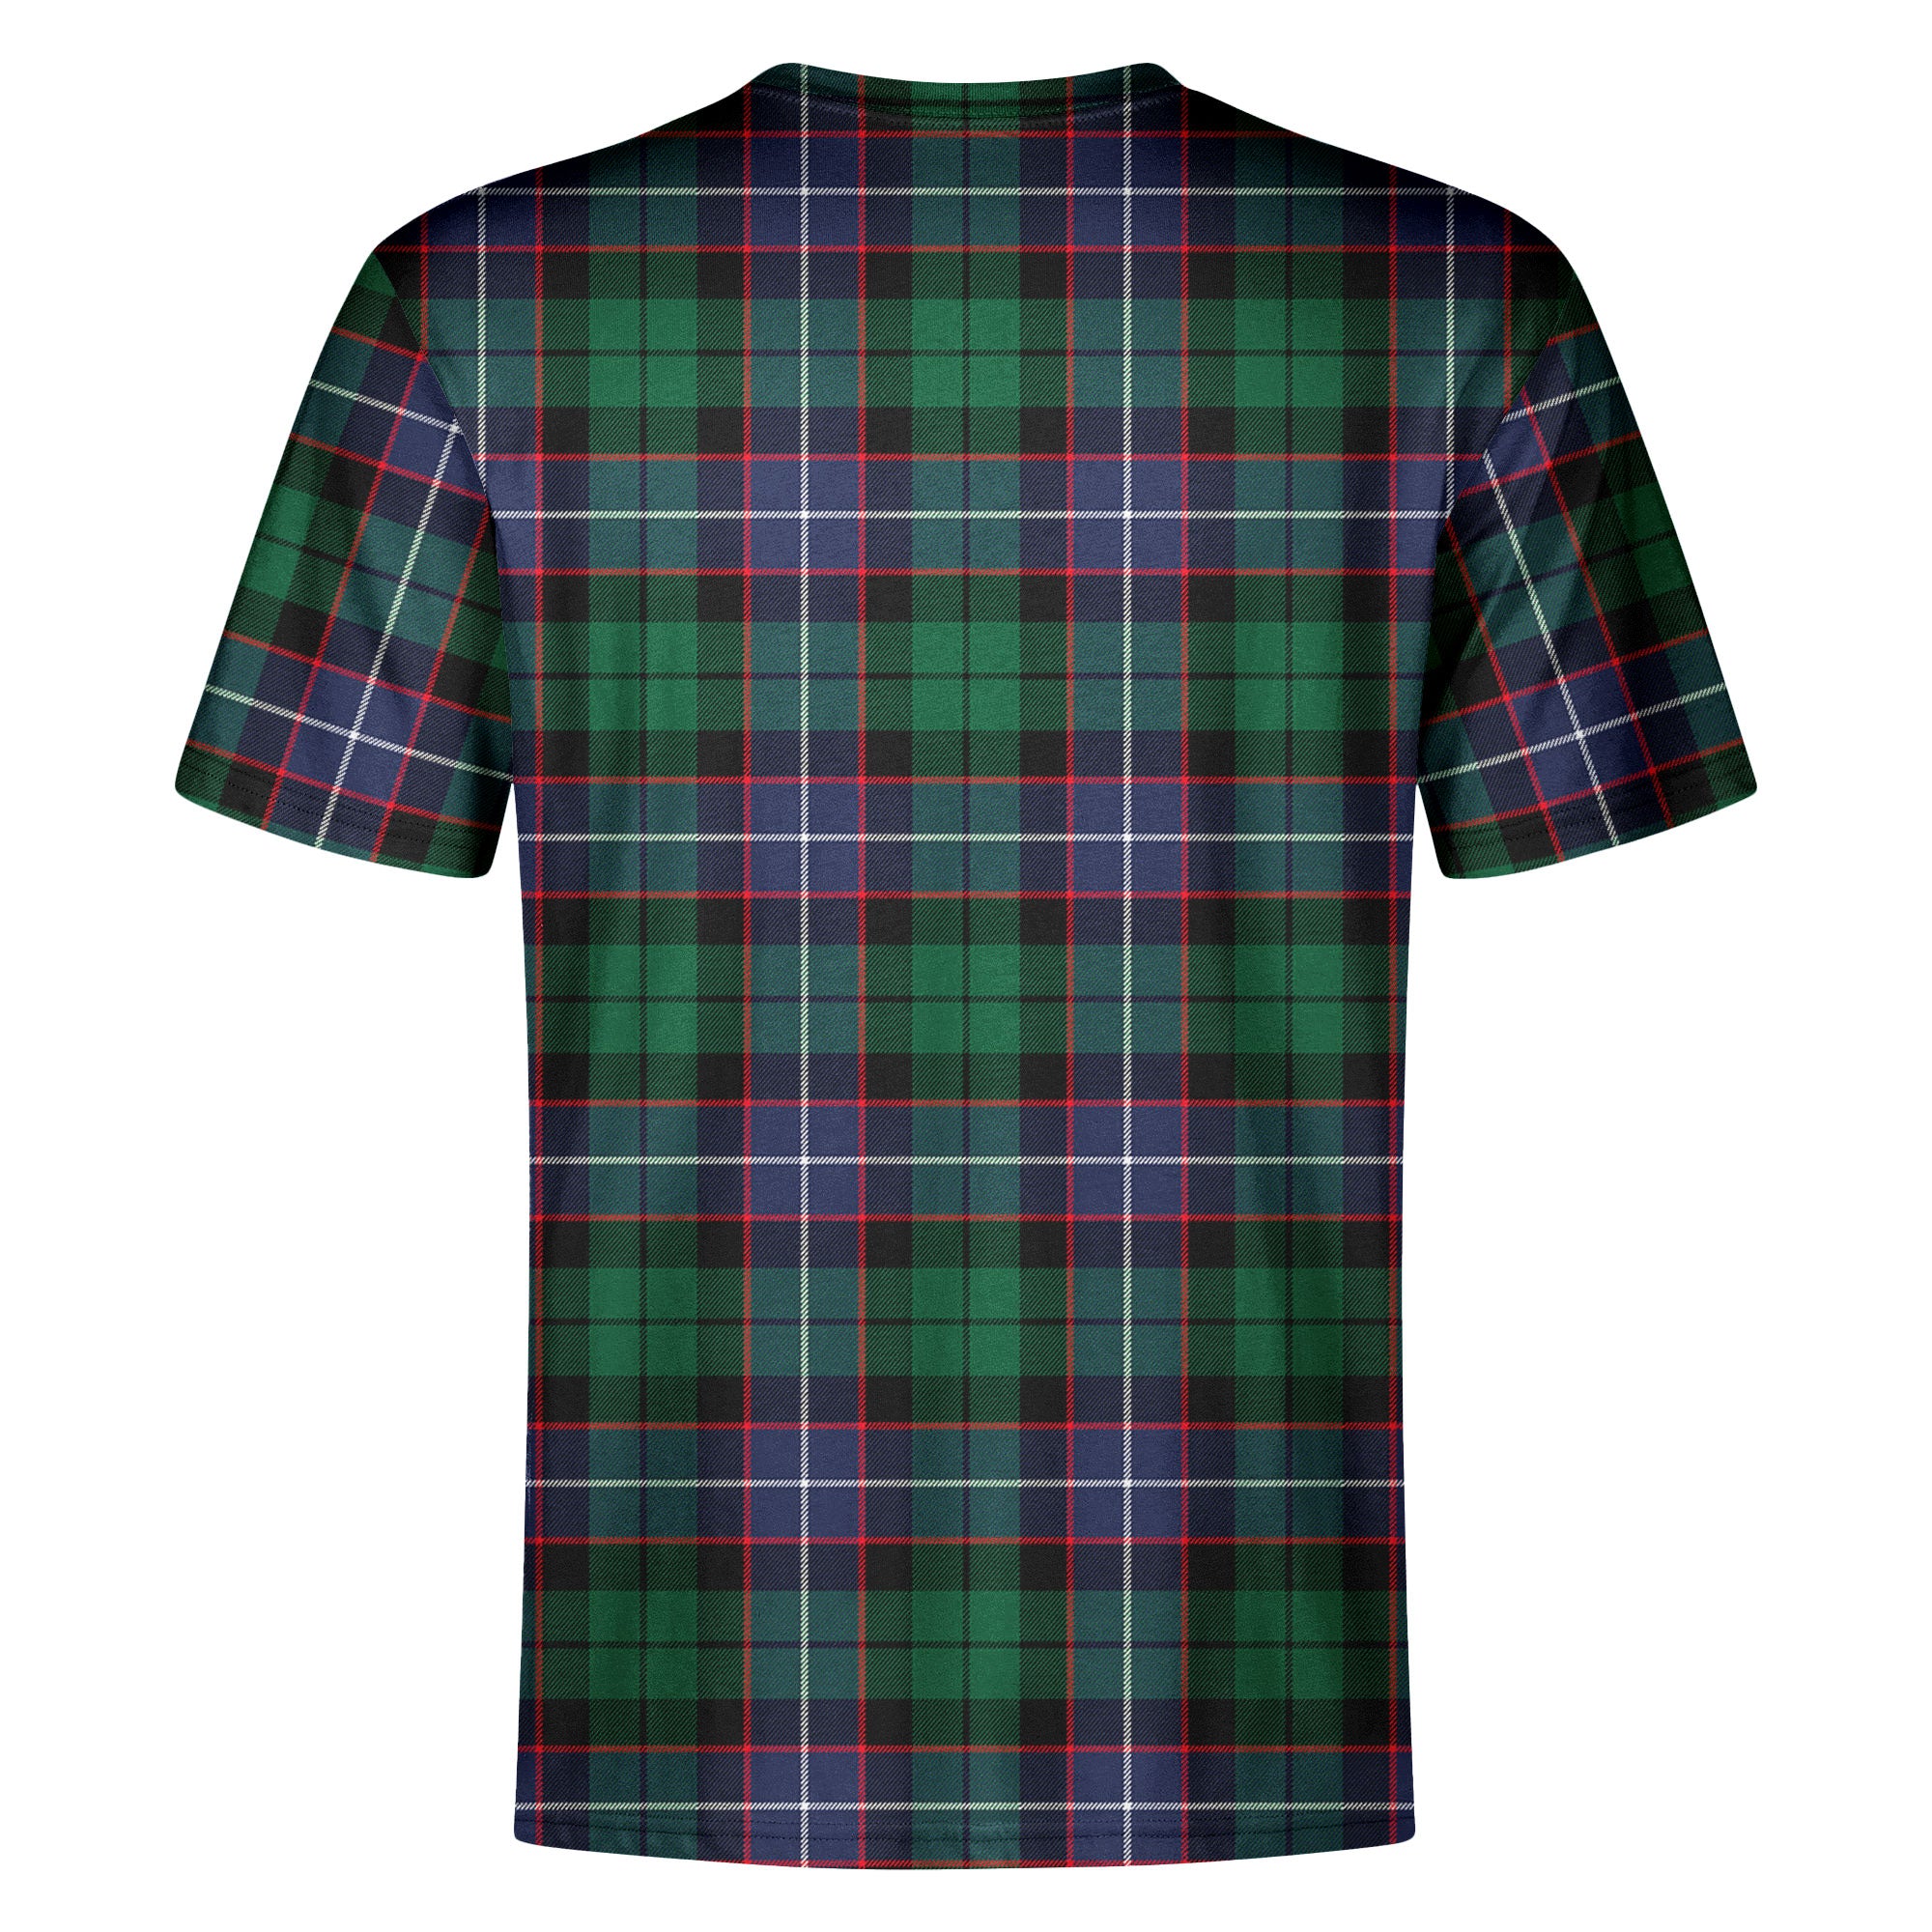 Mitchell Modern Tartan Crest T-shirt